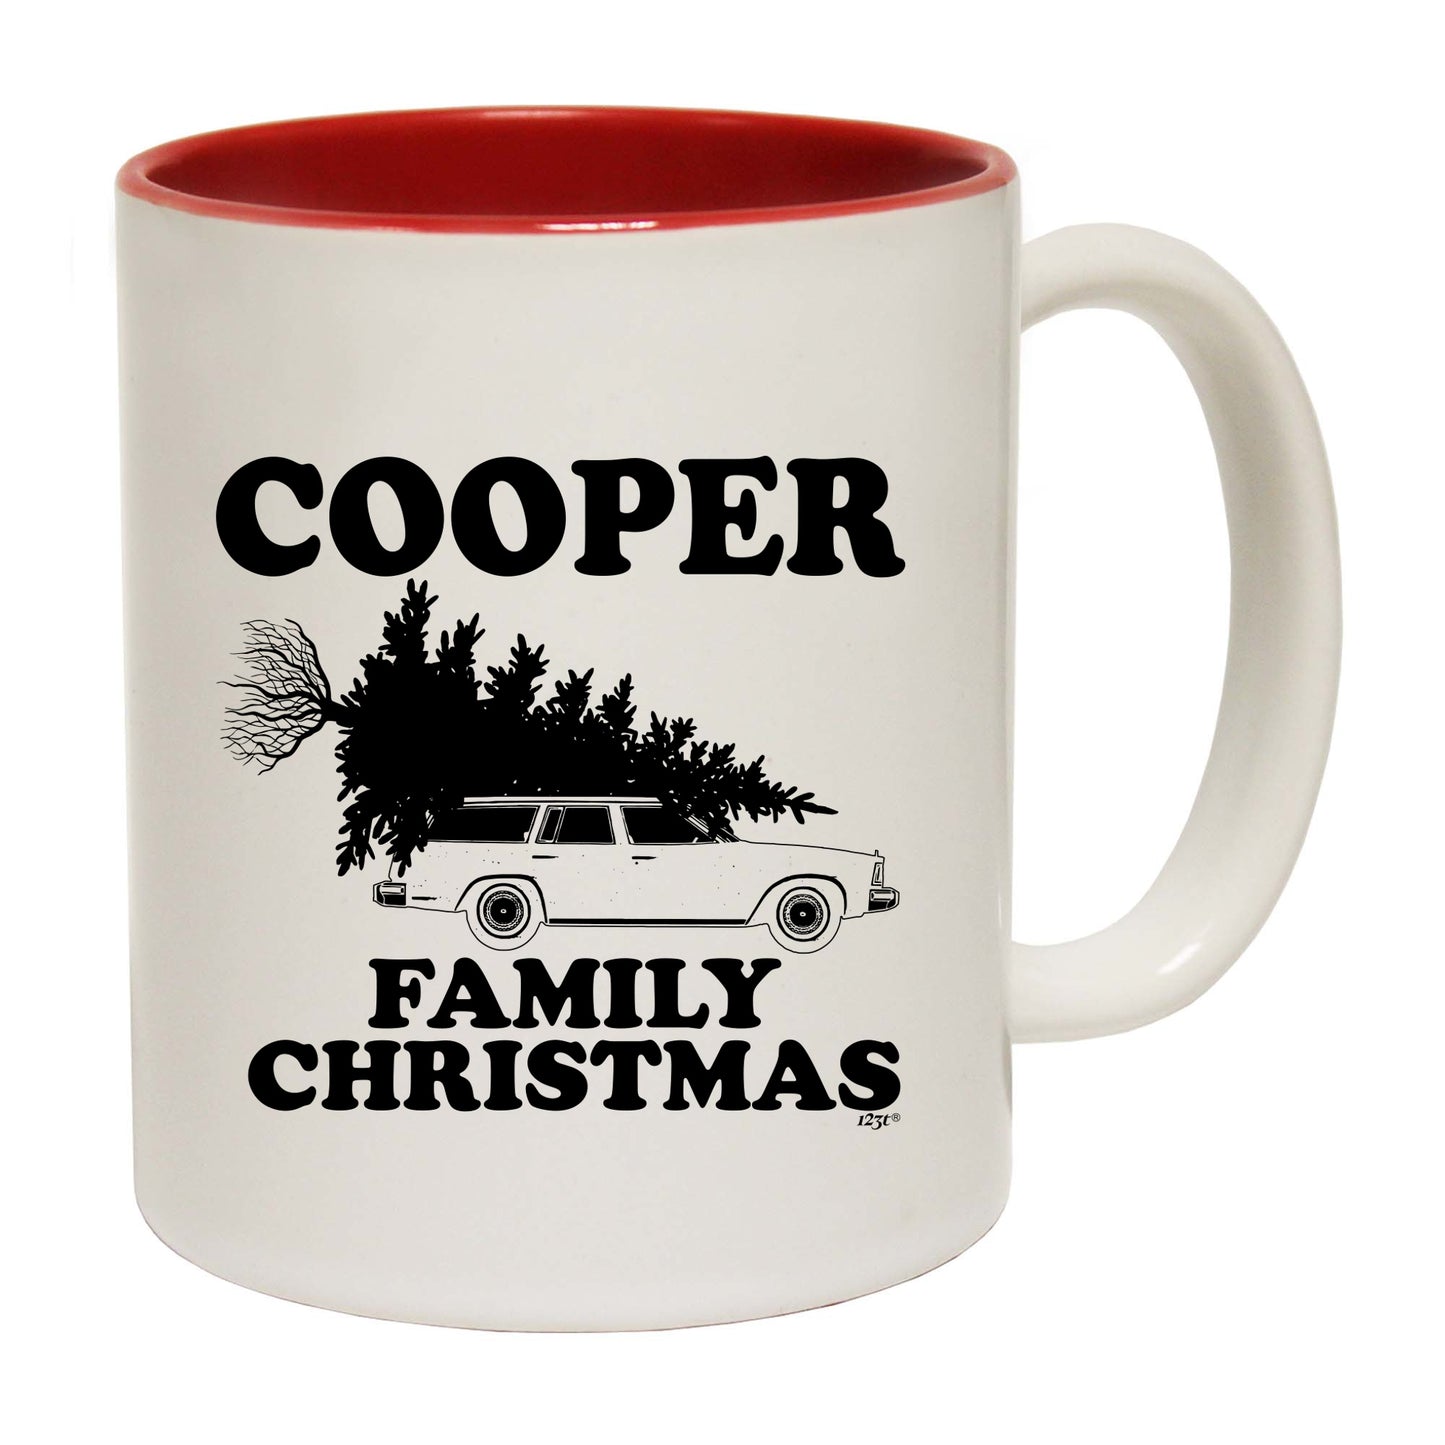 The Christmas Hub - Family Christmas Cooper - Funny Coffee Mug